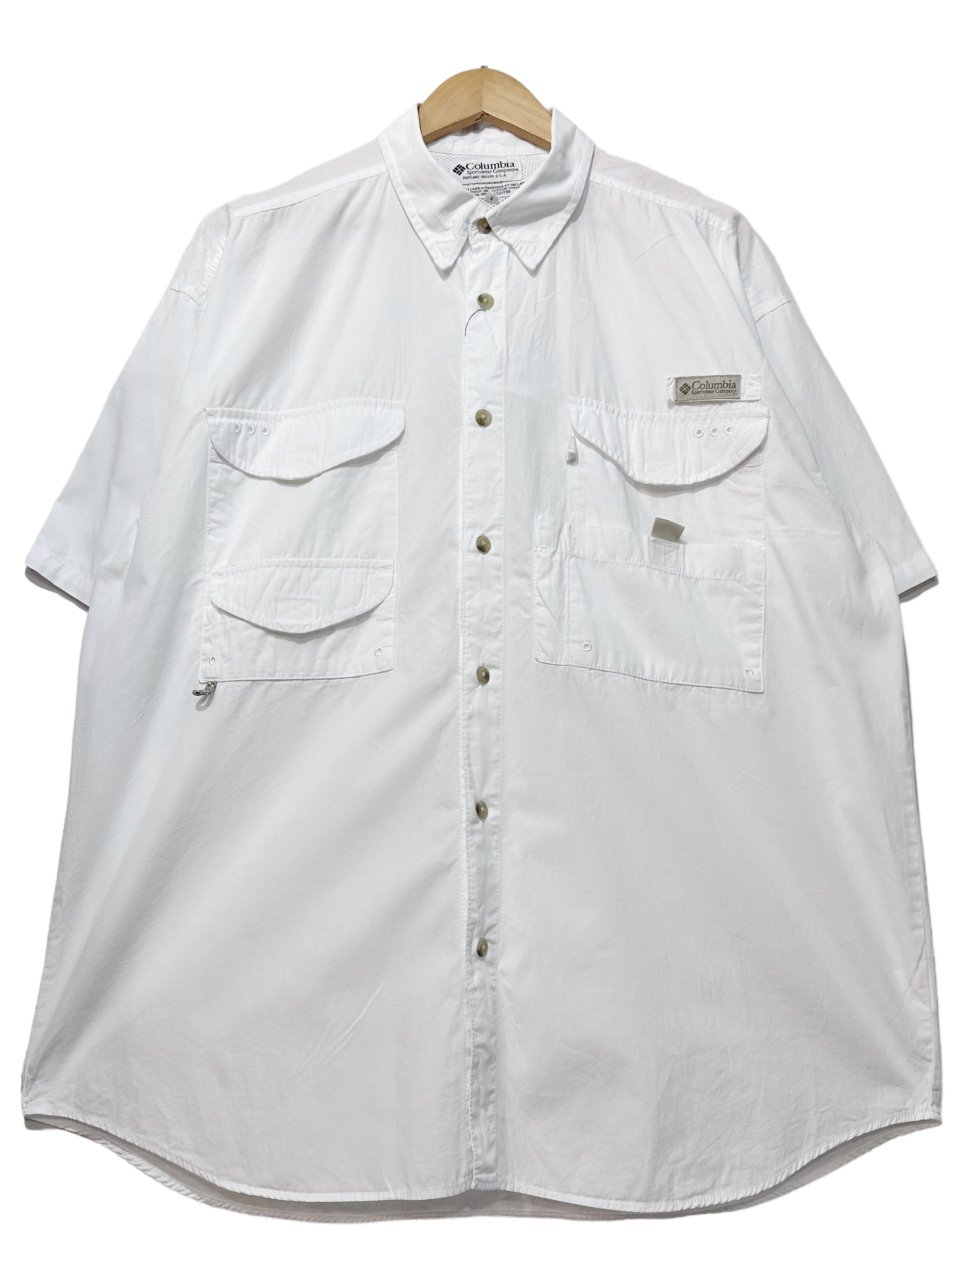 03年製 Columbia PFG S/S Fishing Shirt 白 L 00s コロンビア 半袖 